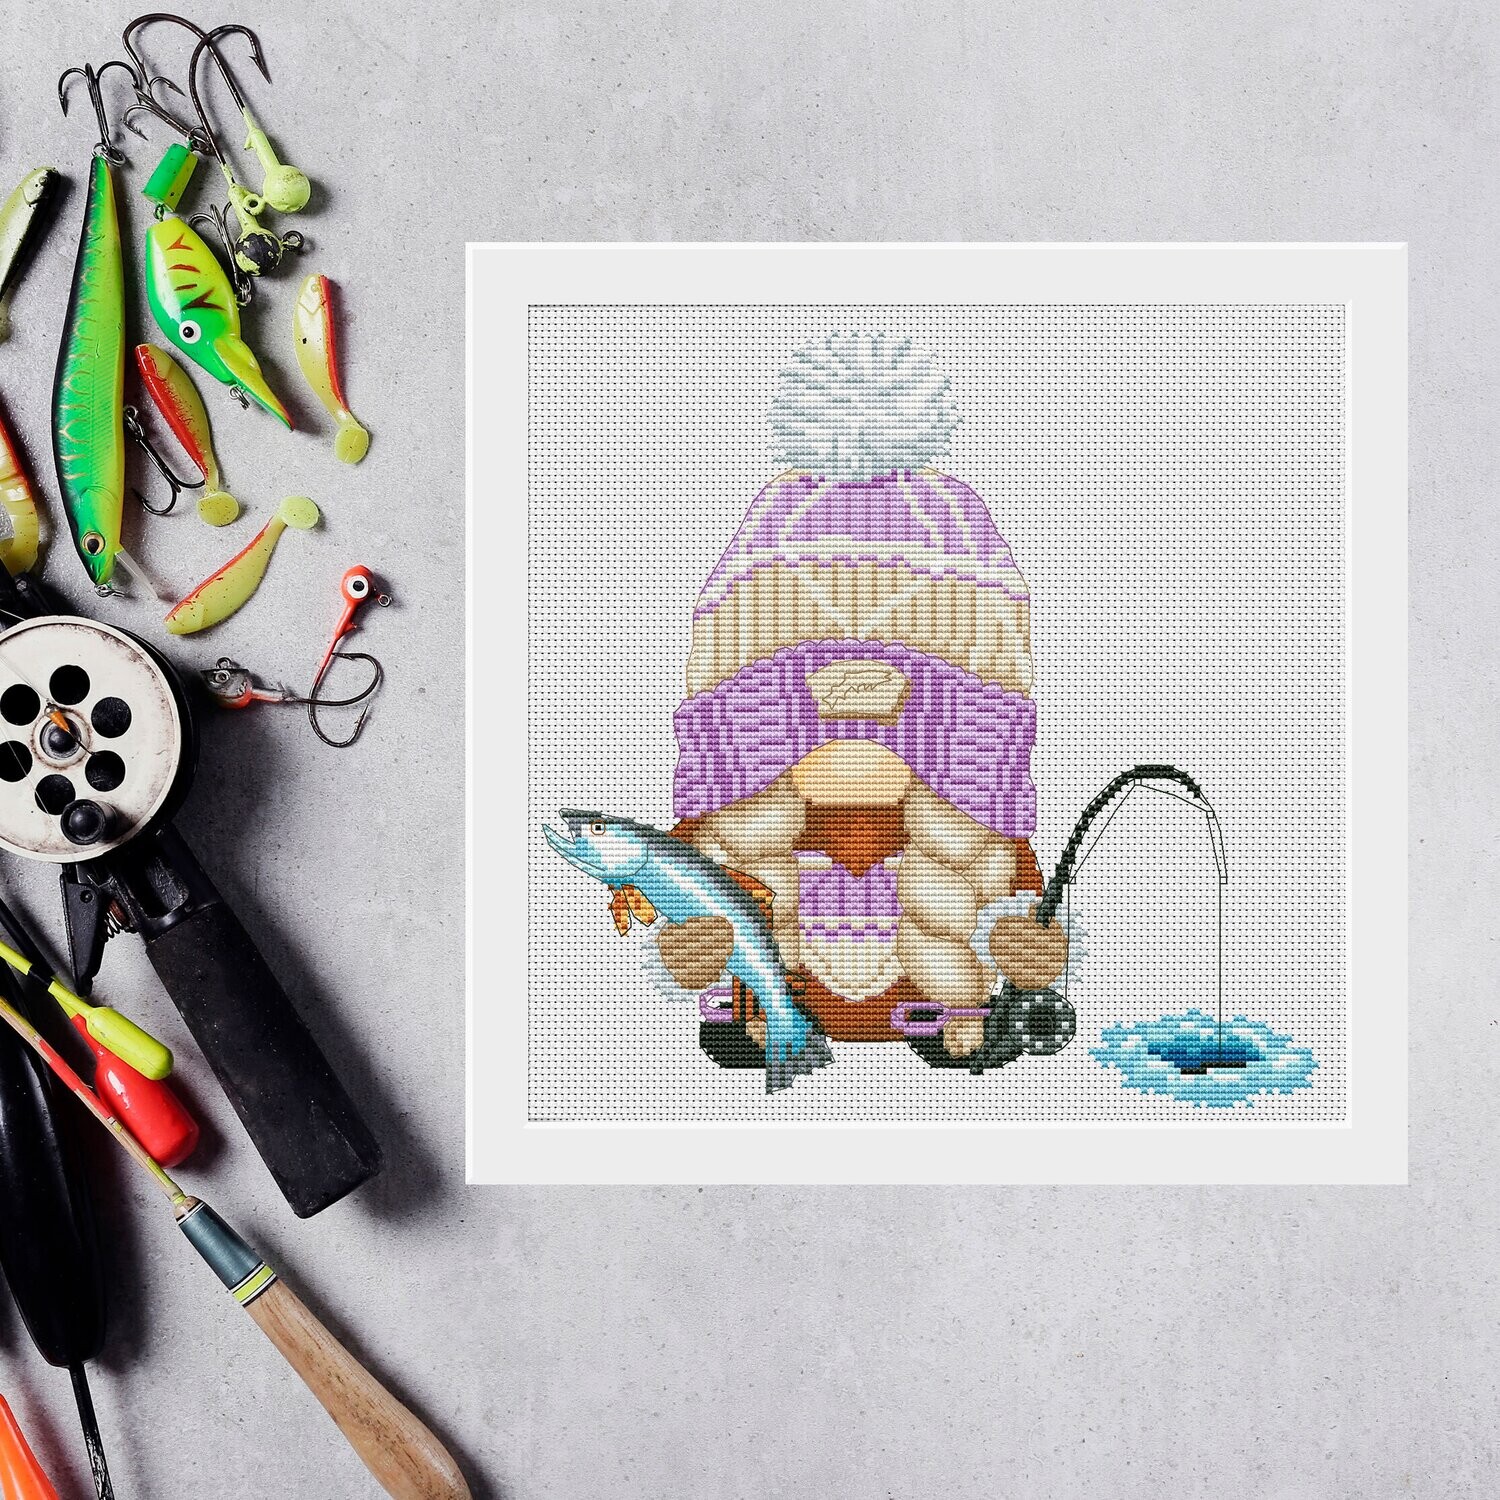 Winter fishing, Gnome cross stitch, Counted cross stitch pattern